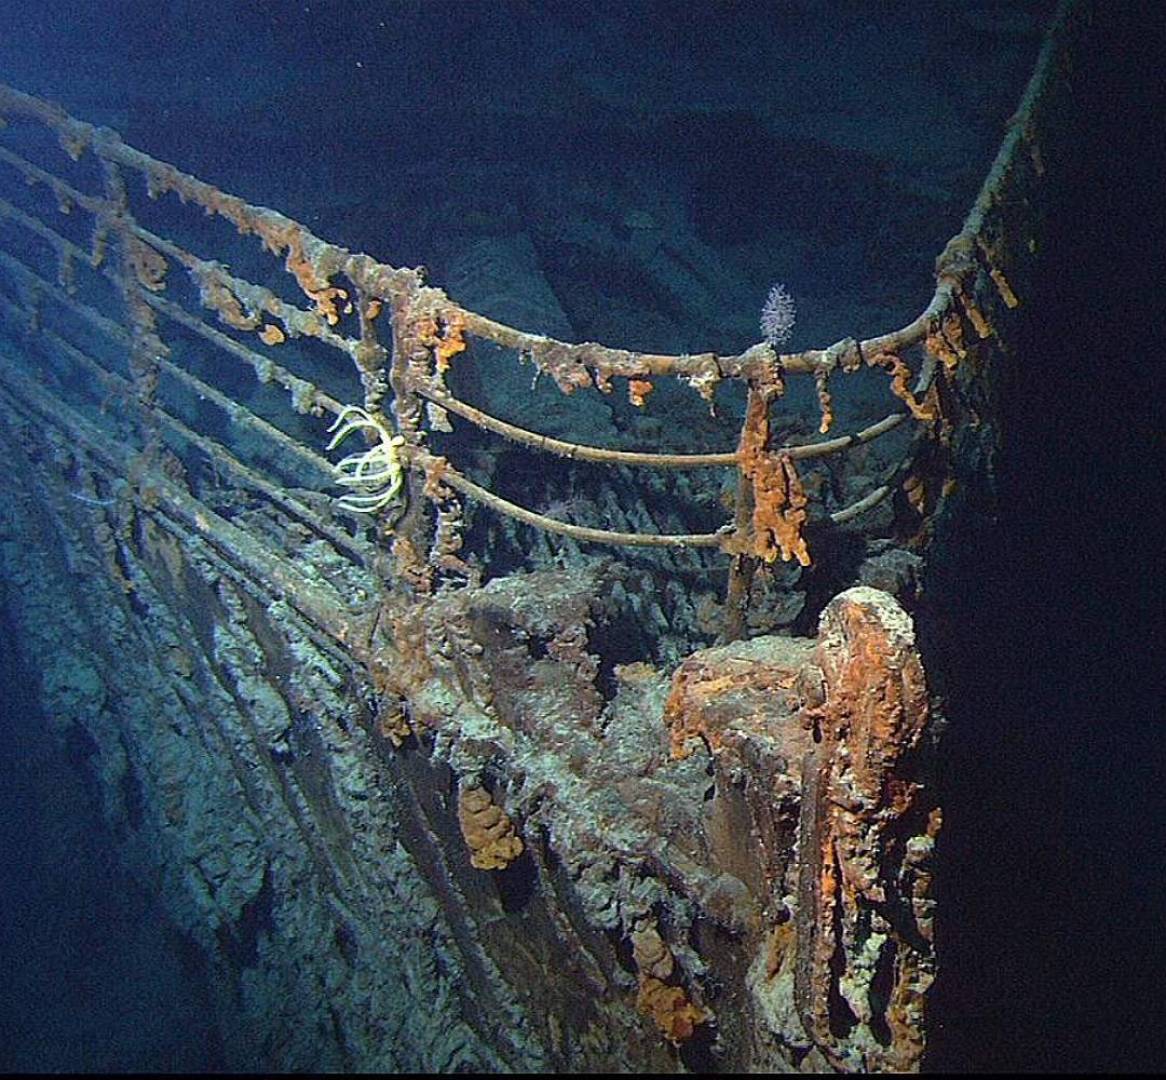 بعد 110 أعوام على غرقها..صور جديدة تظهر بقايا سفينة تيتانيك